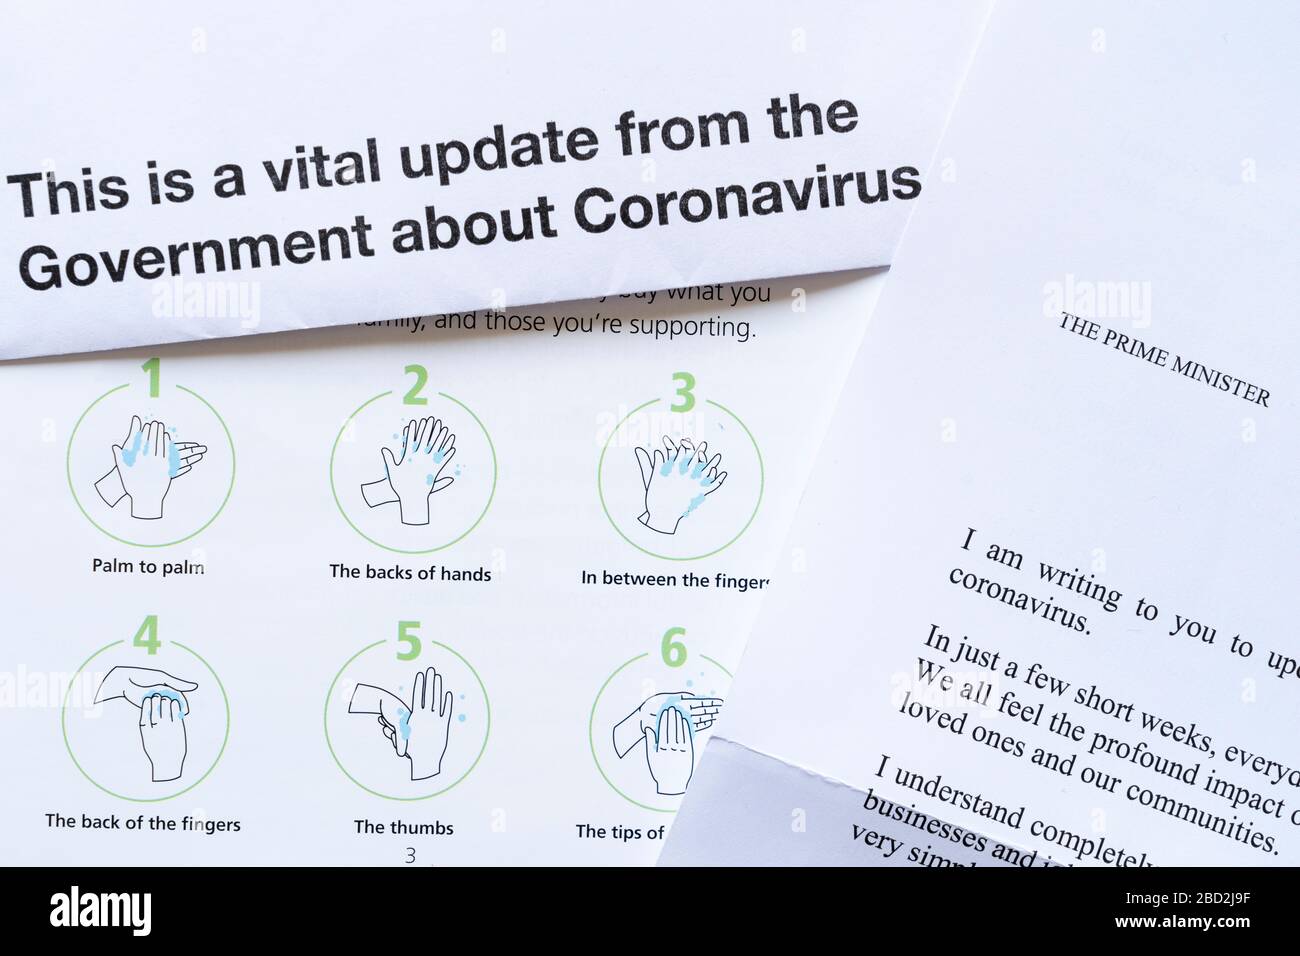 Offizielles Schreiben der HM-Regierung an alle britischen Haushalte als wichtiges Update für die Öffentlichkeit über Coronavirus Covid-19 während der Pandemie, April 2020 Stockfoto